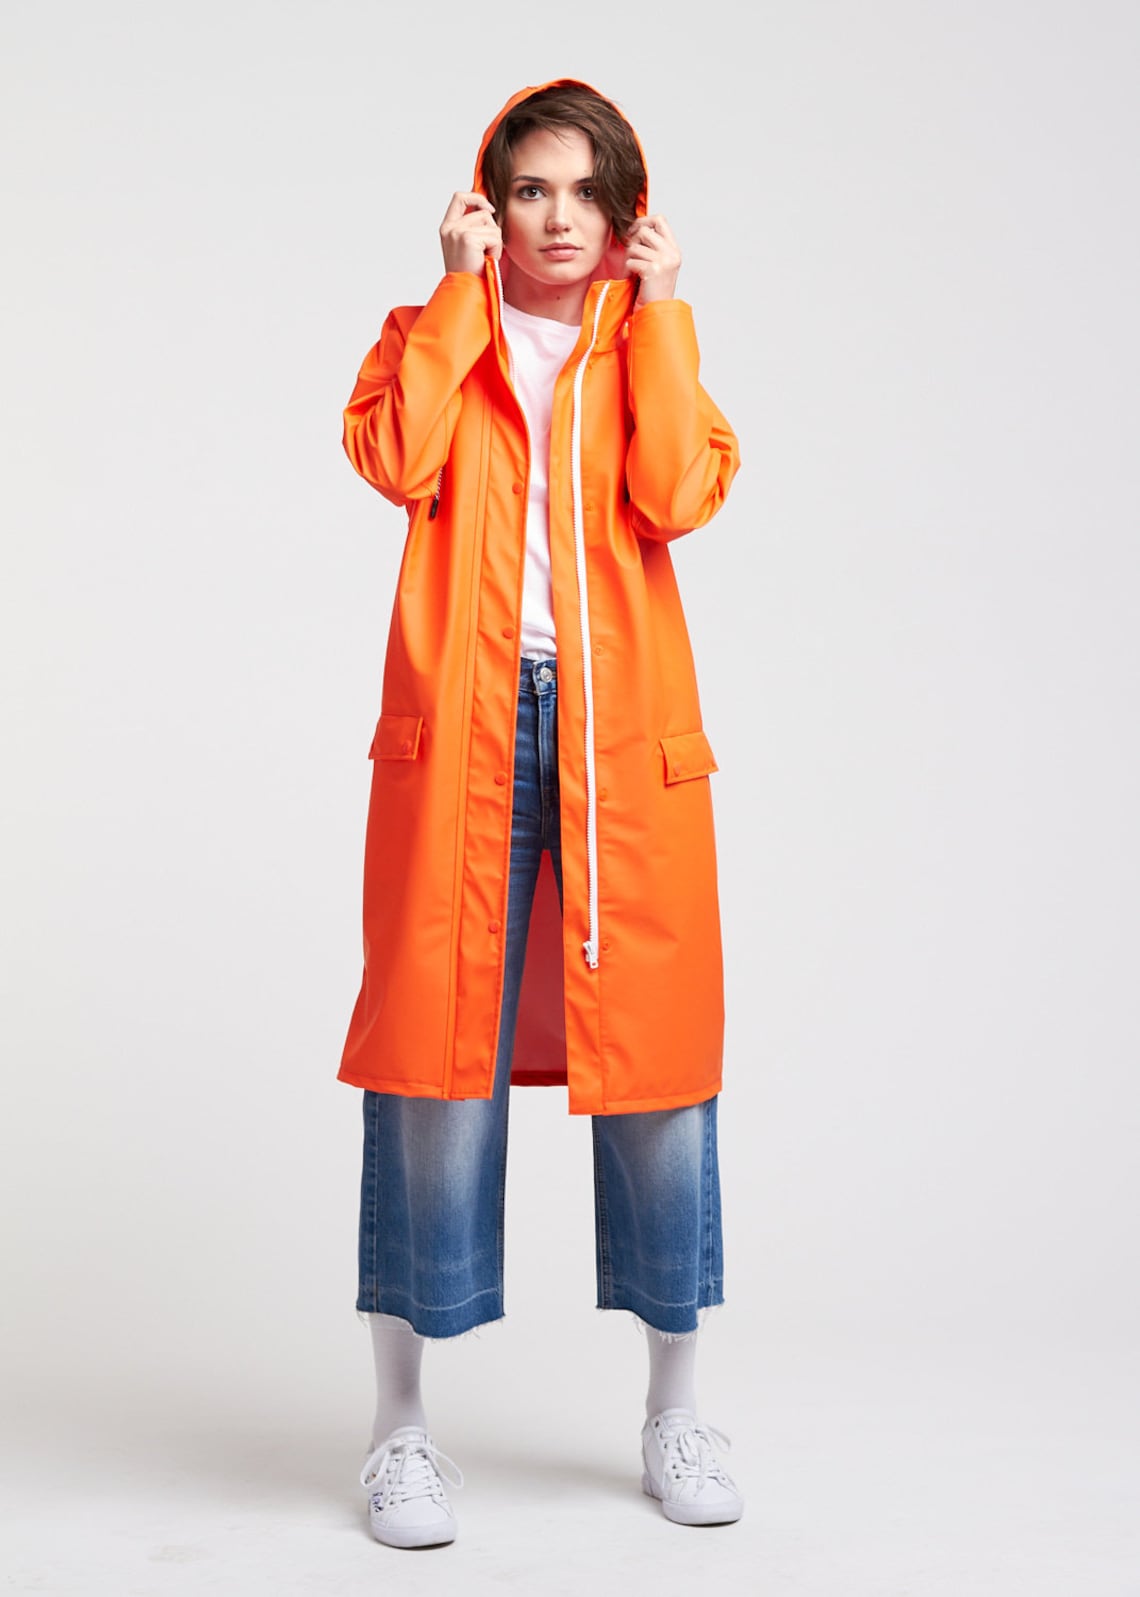 Women Elongated Orange Raincoat | Etsy